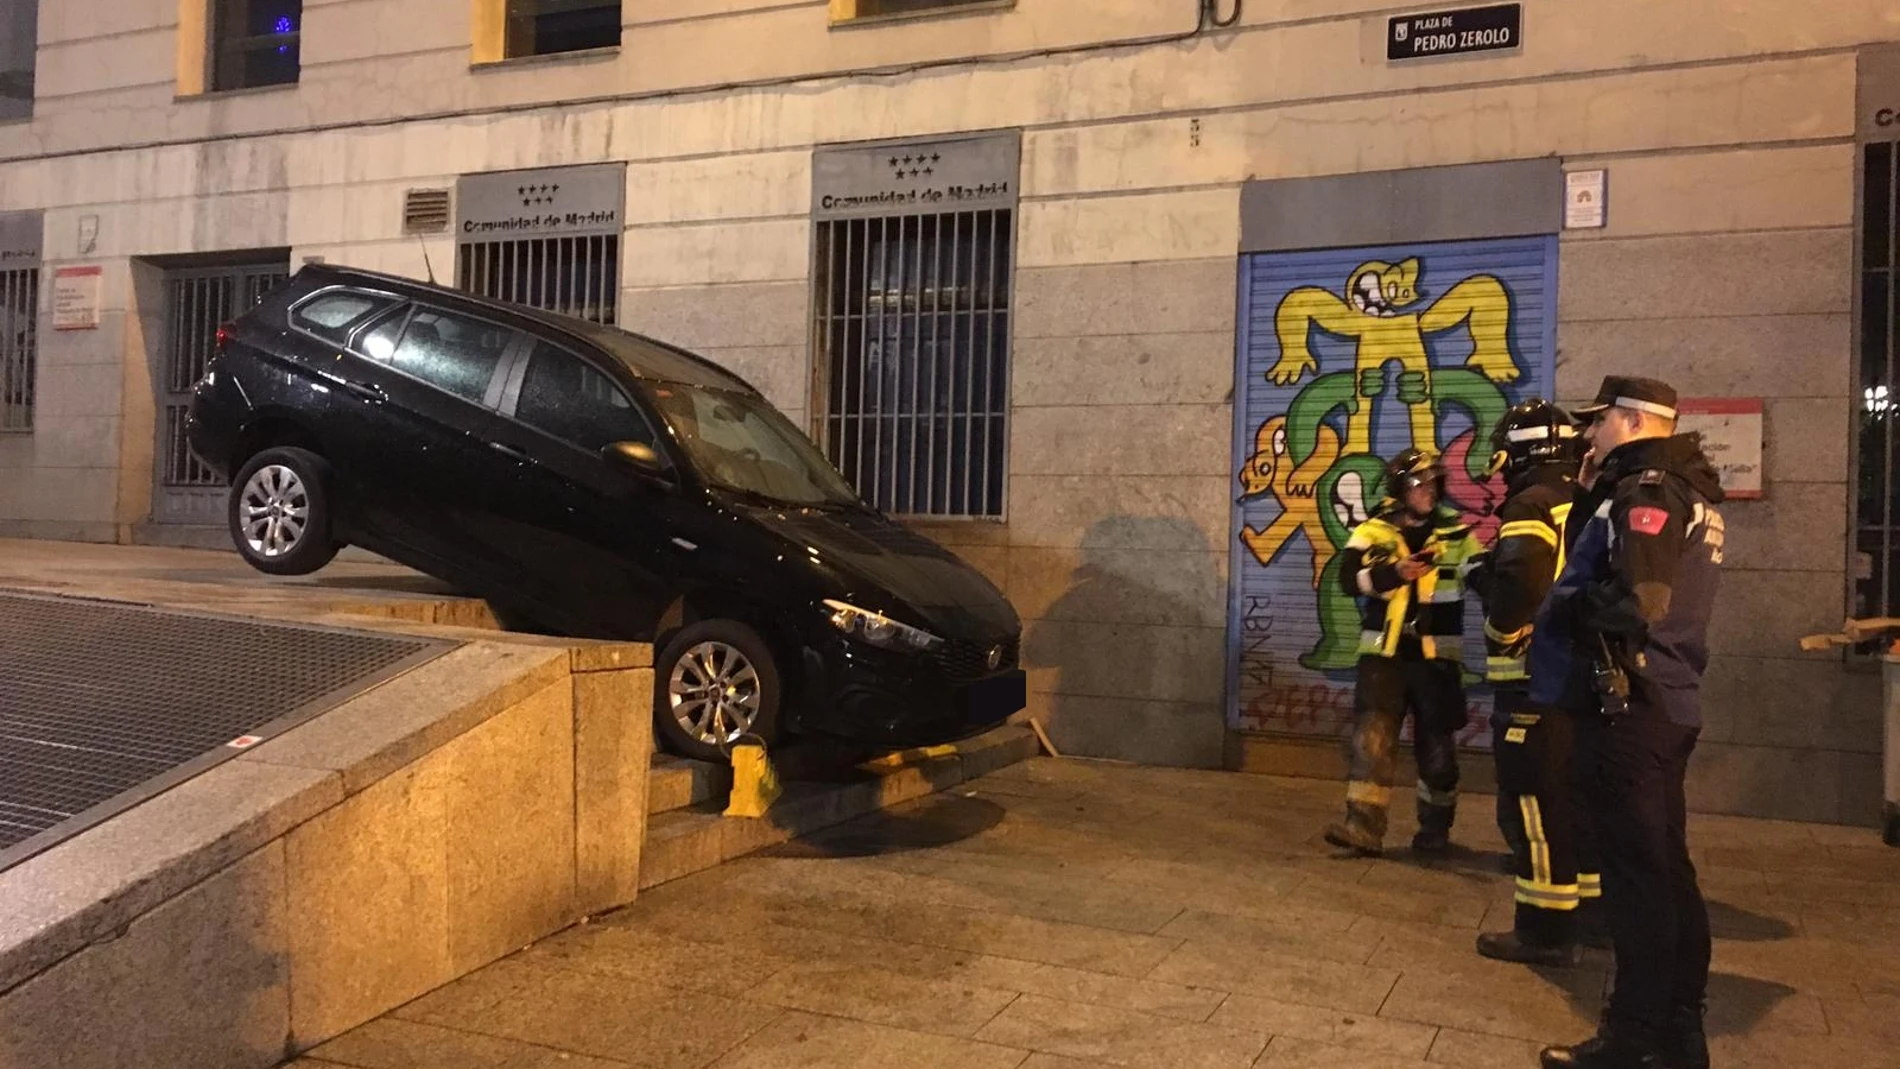 El vehículo quedó en equilobrio encima de las escaleras de la plaza. Foto y vídeo: J. Garrido